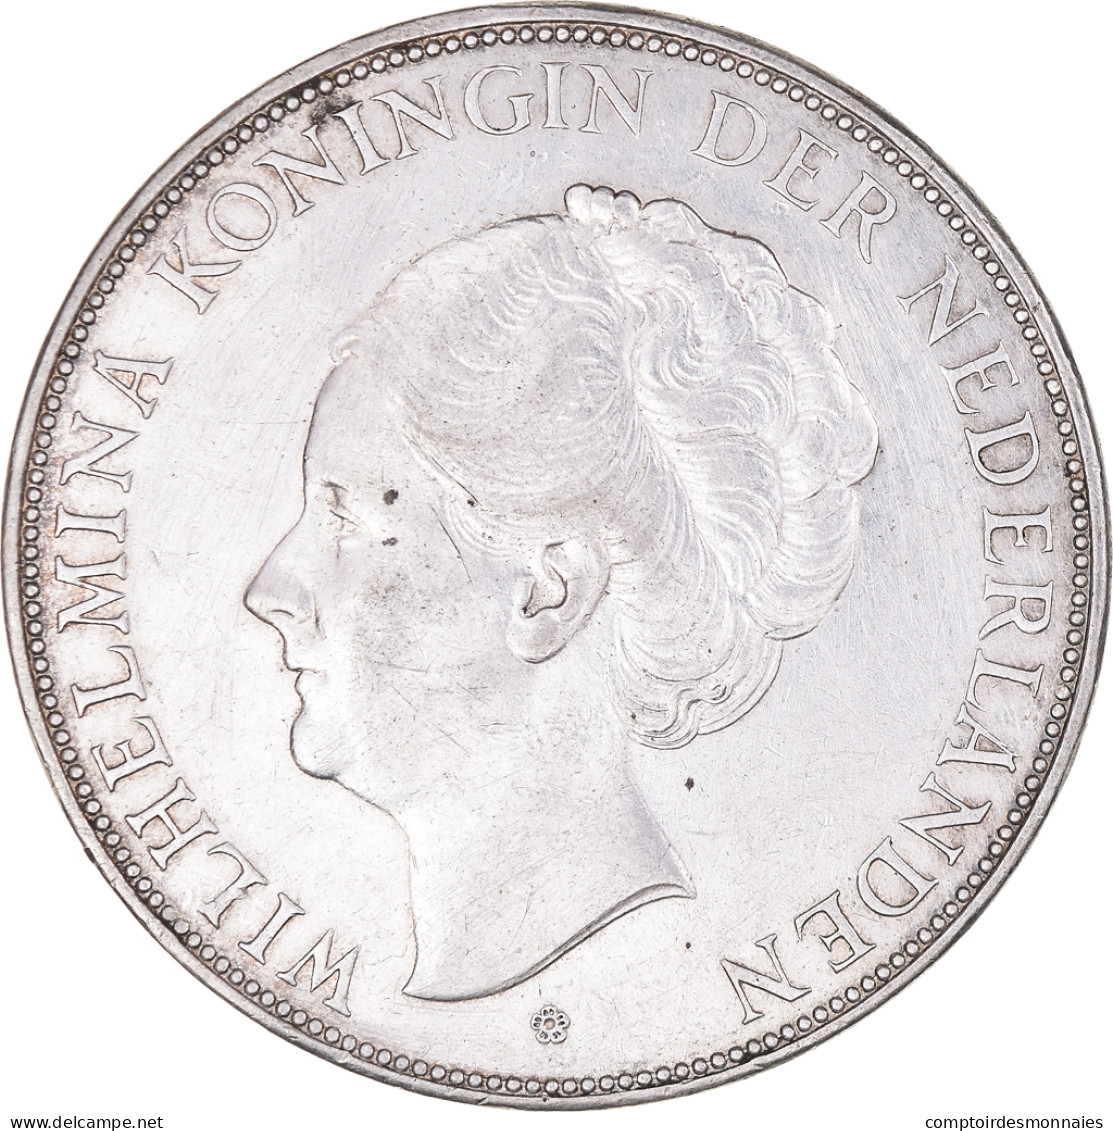 Monnaie, Pays-Bas, Wilhelmina I, 2-1/2 Gulden, 1939, TTB+, Argent, KM:165 - 2 1/2 Gulden